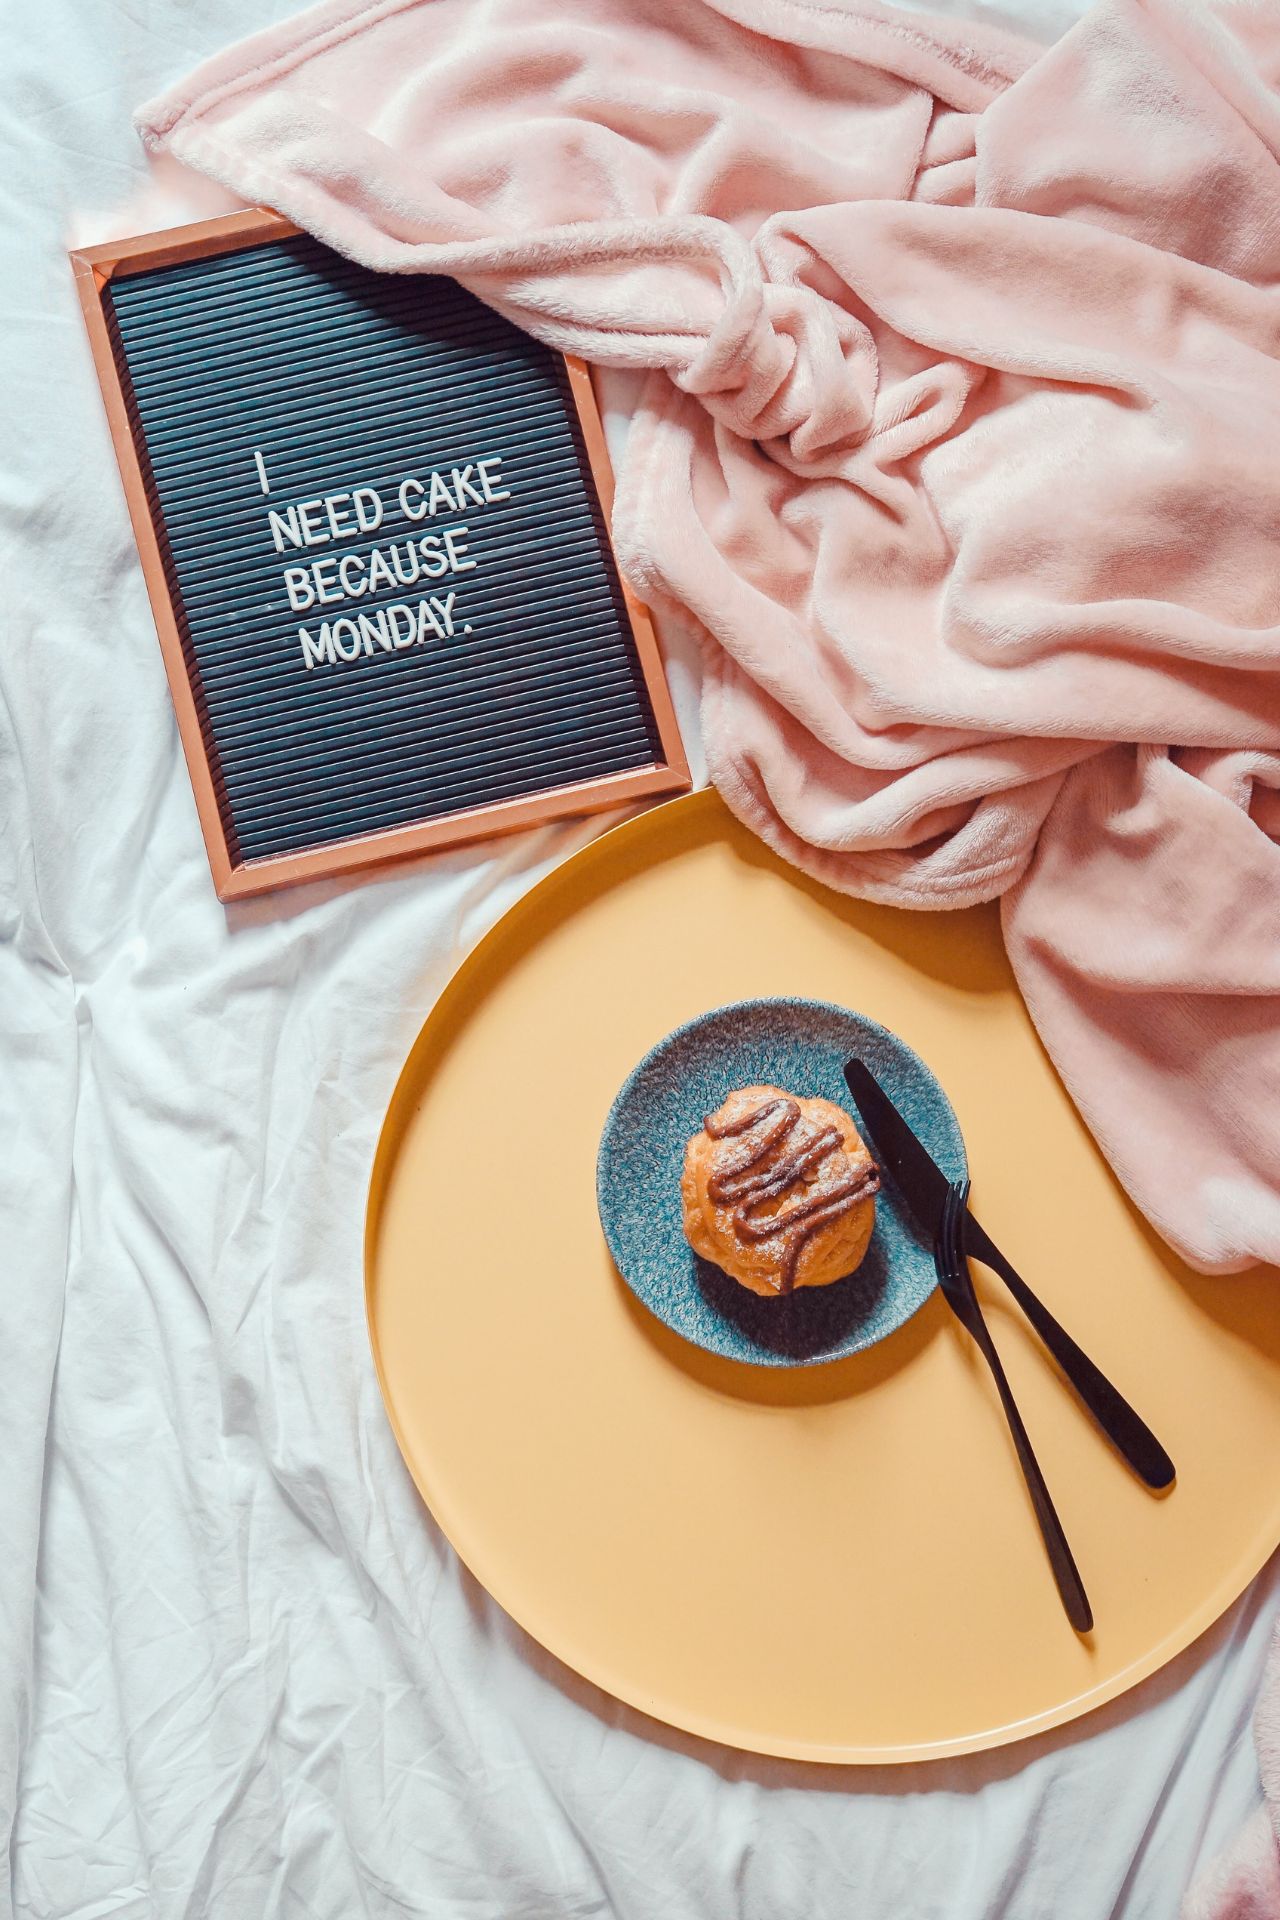 Sunday Blues: Muffin im Bett, dazu eine rosa Kuscheldecke und eine schwarze Tafel mit Spruch in weißen Lettern: "I need cake because Monday".